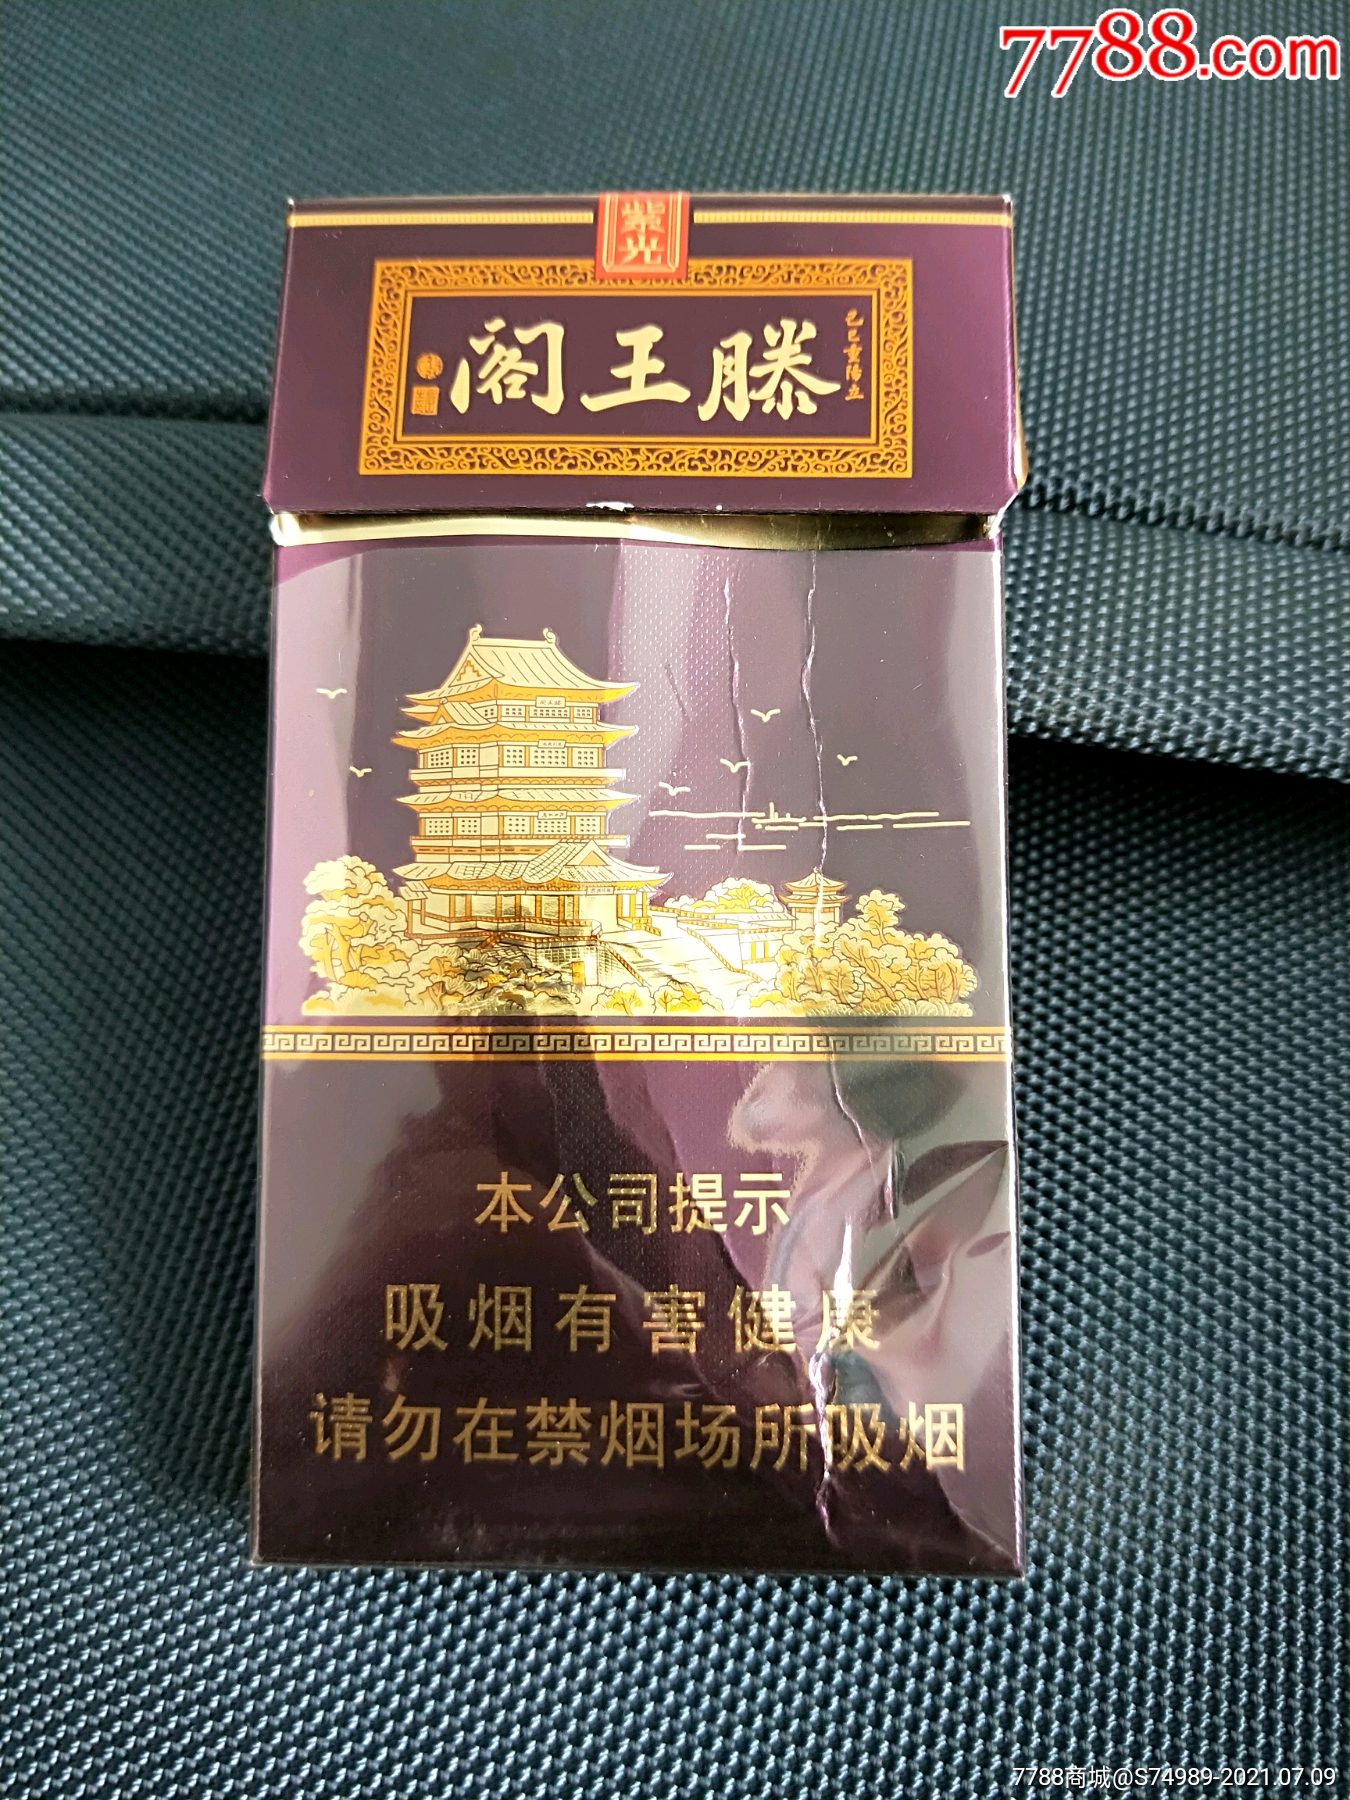 滕王阁香烟紫光多少钱图片